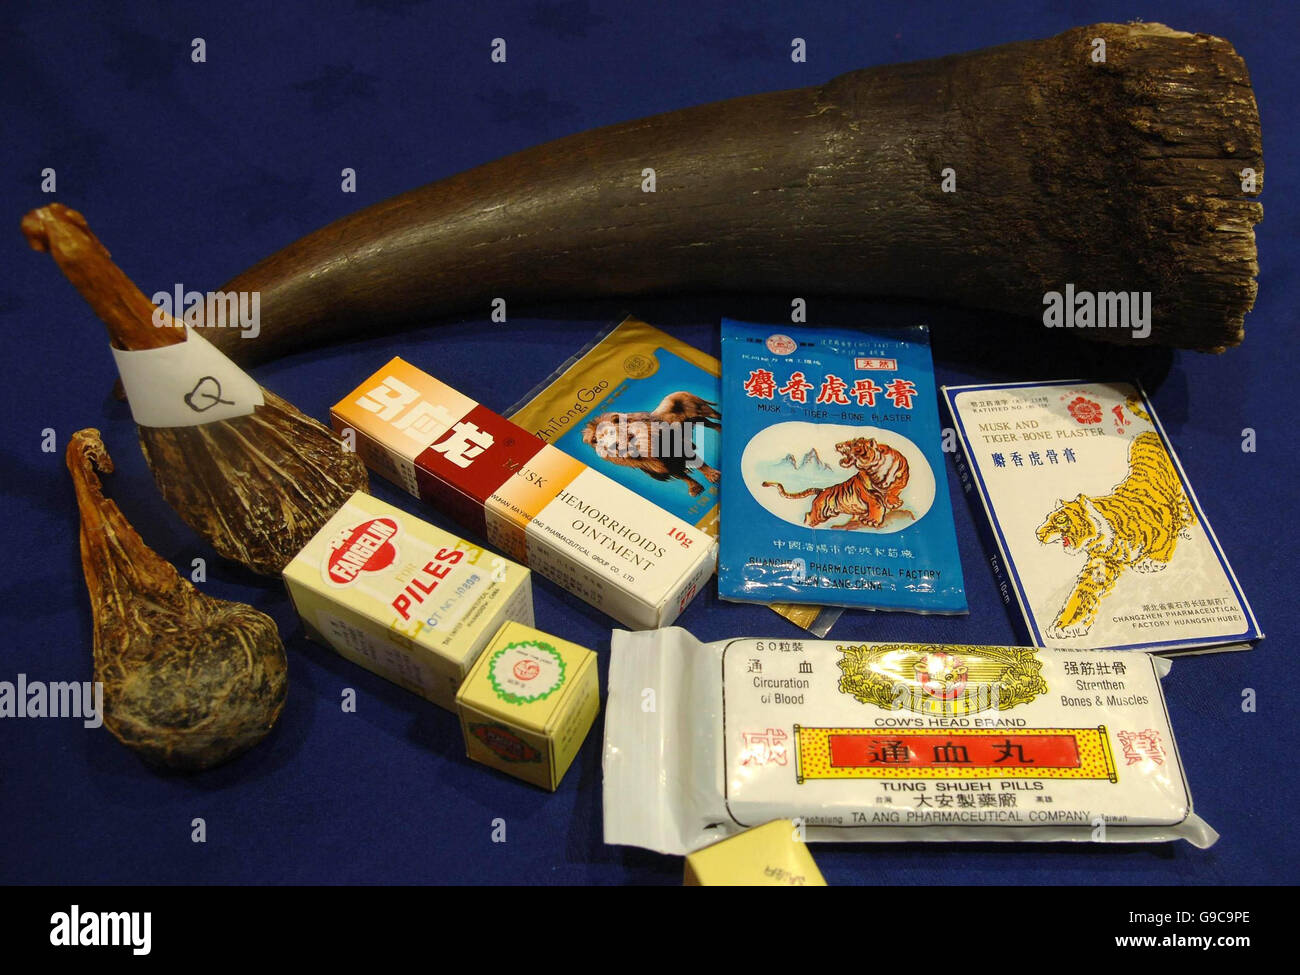 Une gamme de médicaments chinois, y compris une corne de rhinocéros, qui peut contenir des poisons et des parties d'espèces menacées en exposition à la conférence du Trading Standards Institute à Londres . Banque D'Images